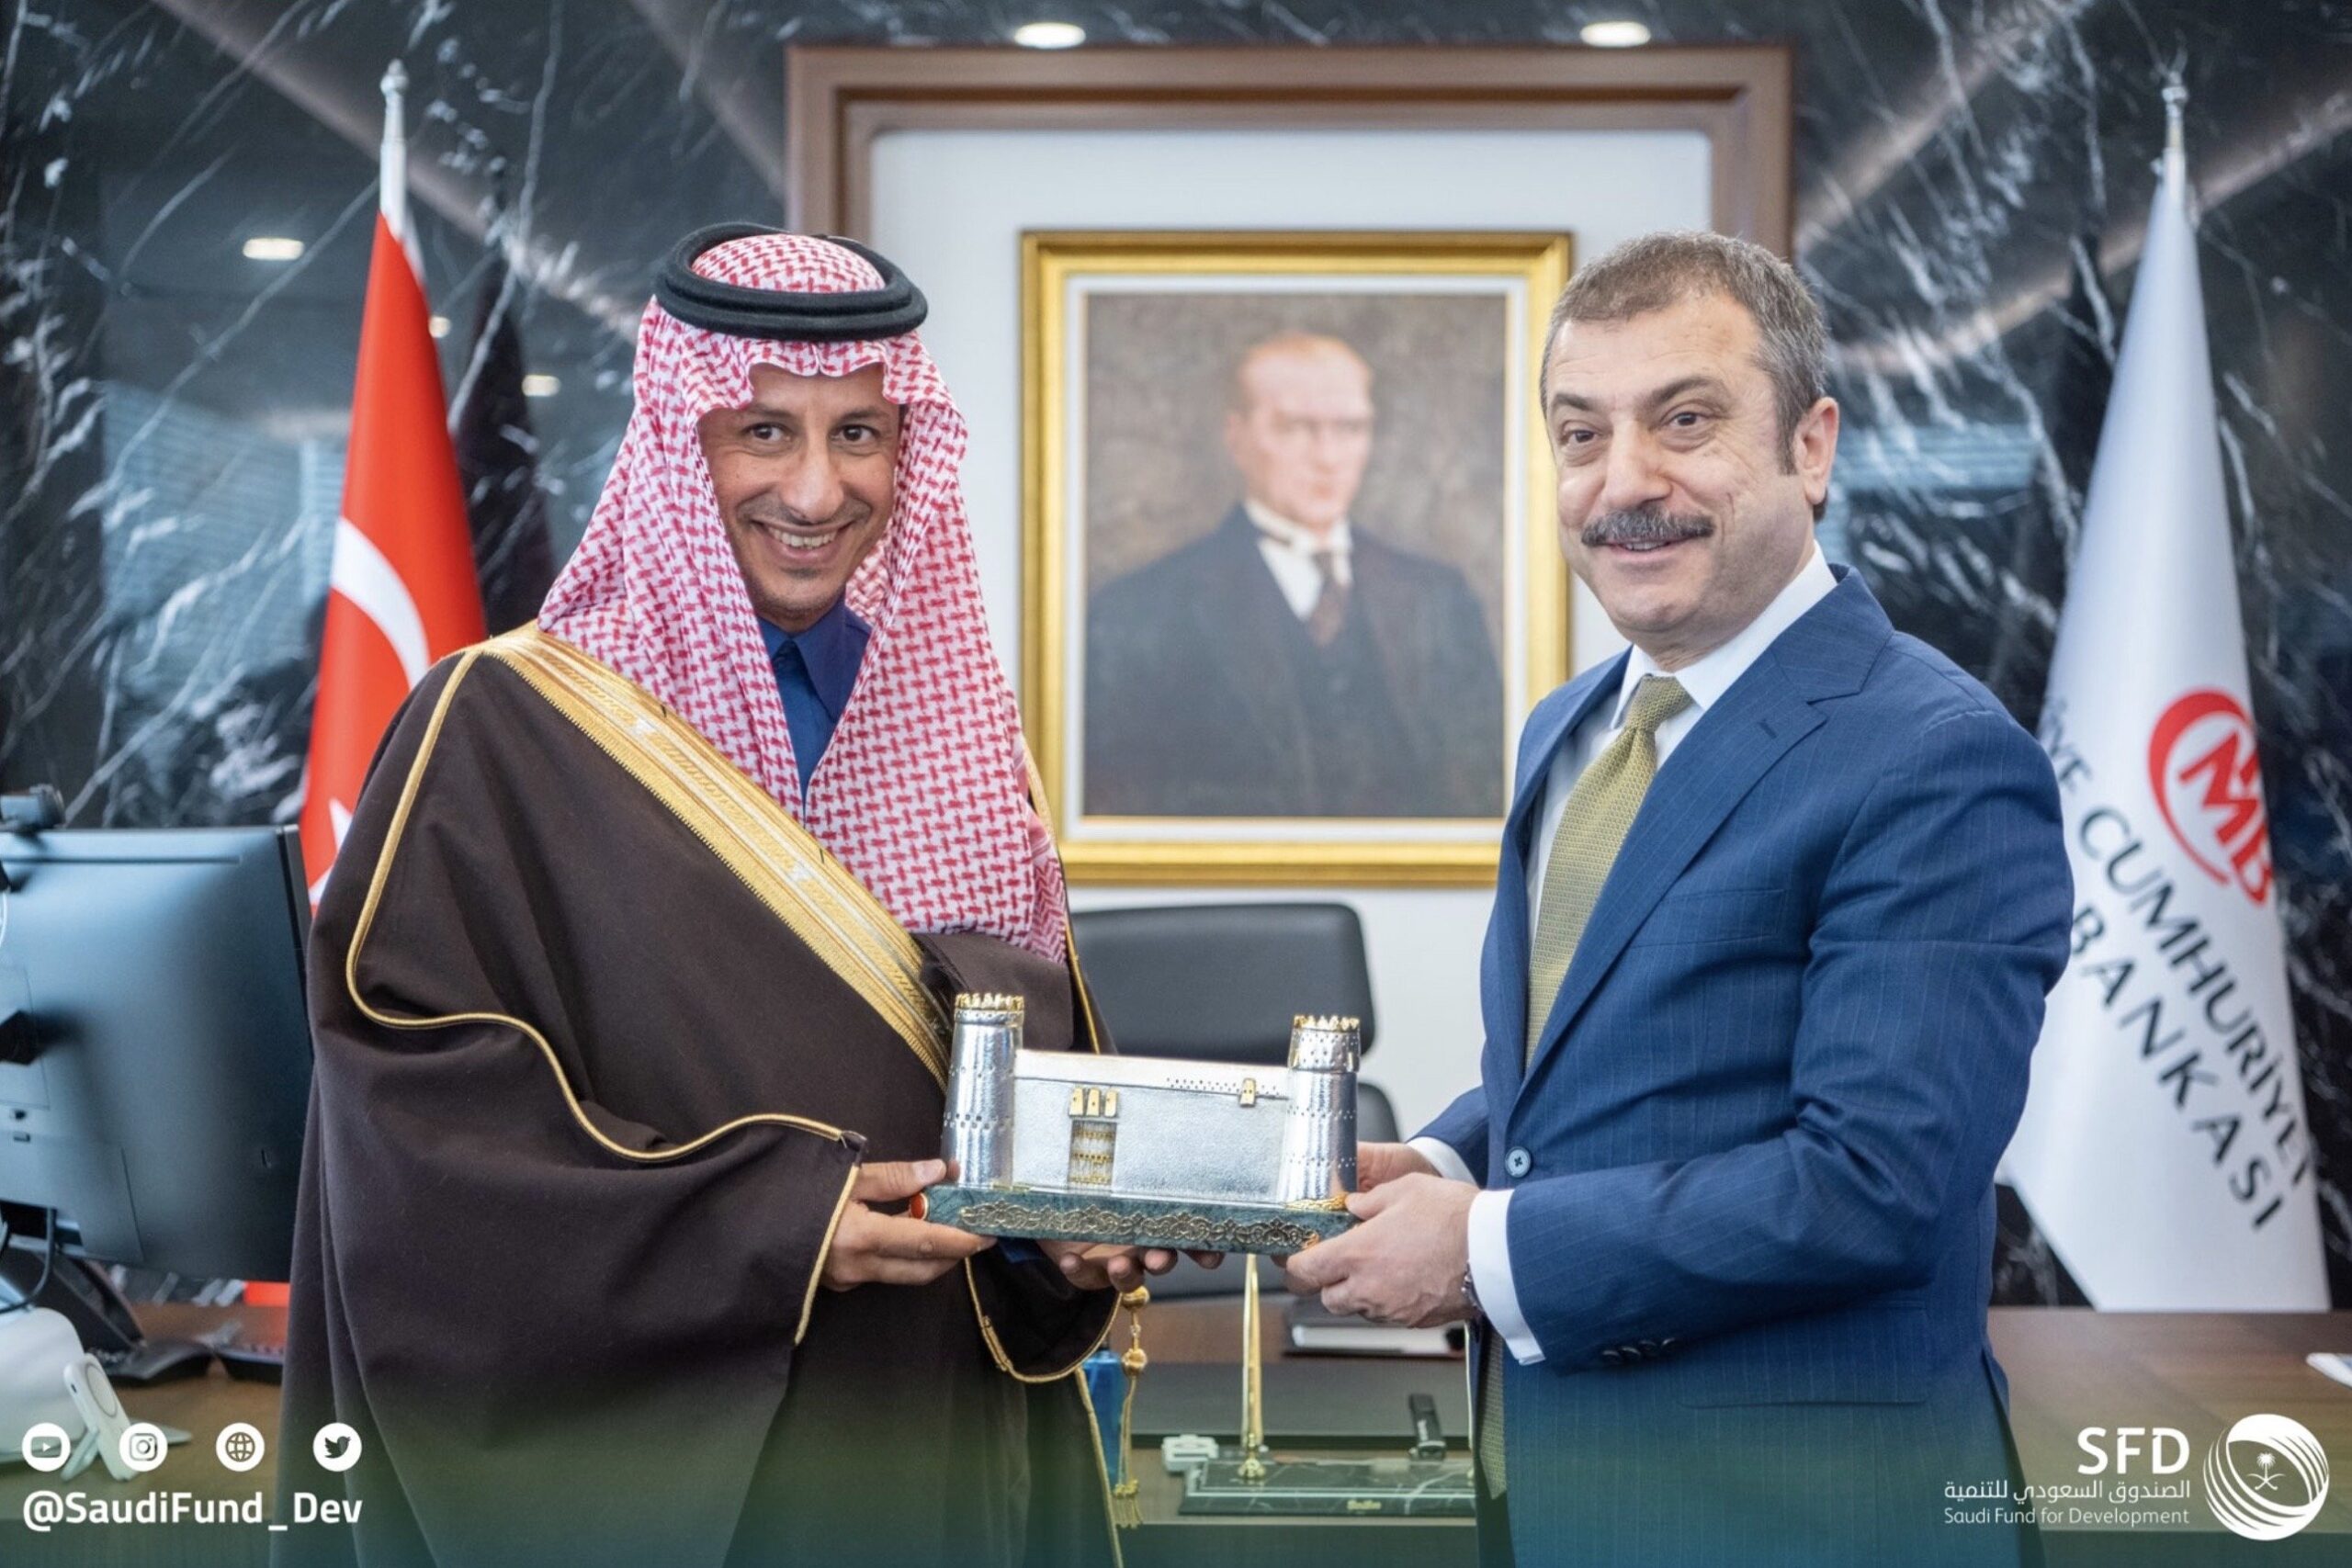 السعودية توقع اتفاقًا لإيداع 5 مليارات دولار في البنك المركزي التركي